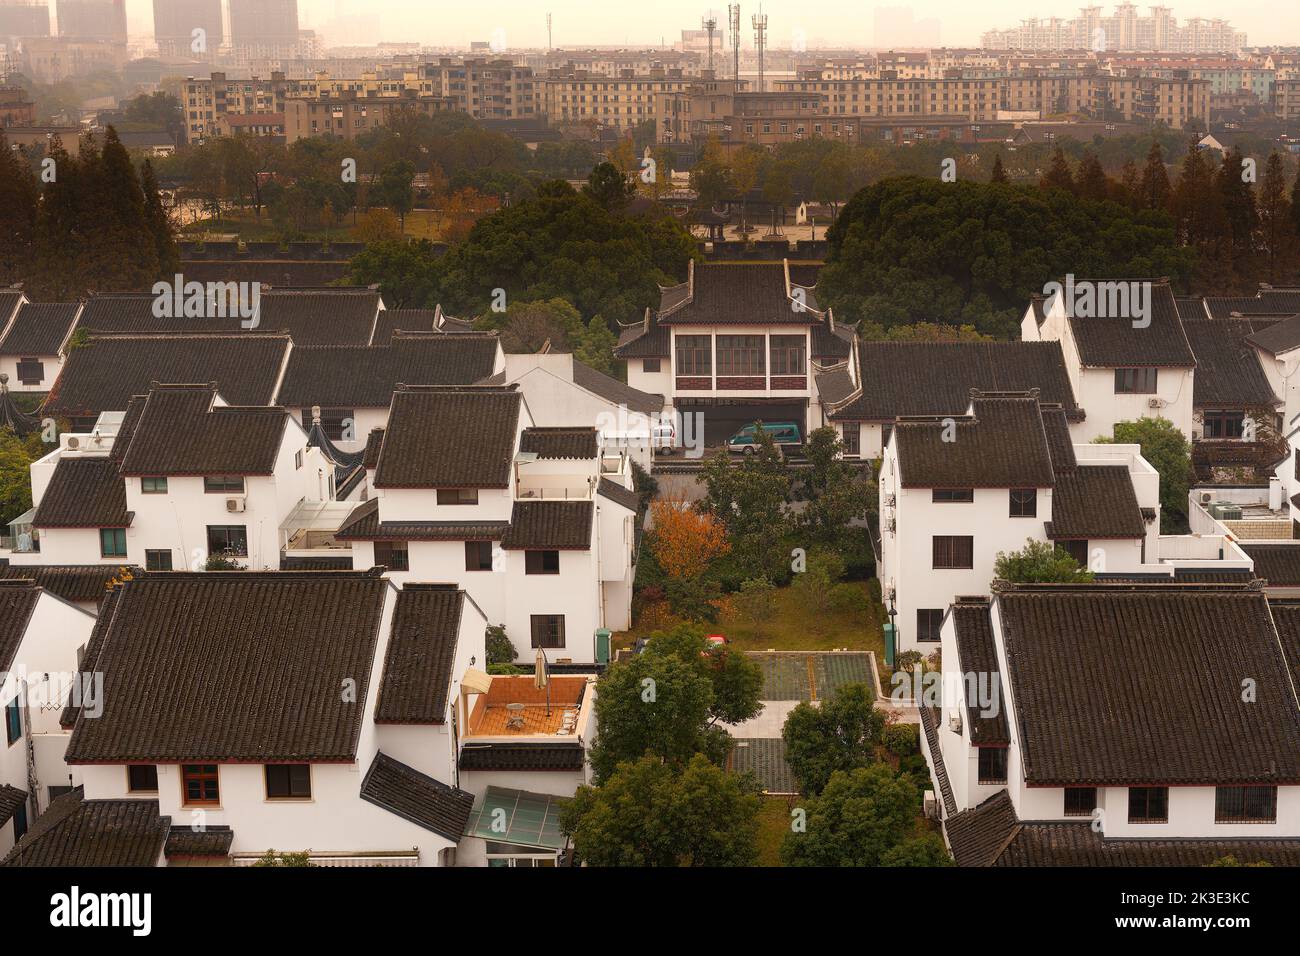 Cityscape of Suzhou, Jiangsu Province, China Stock Photo